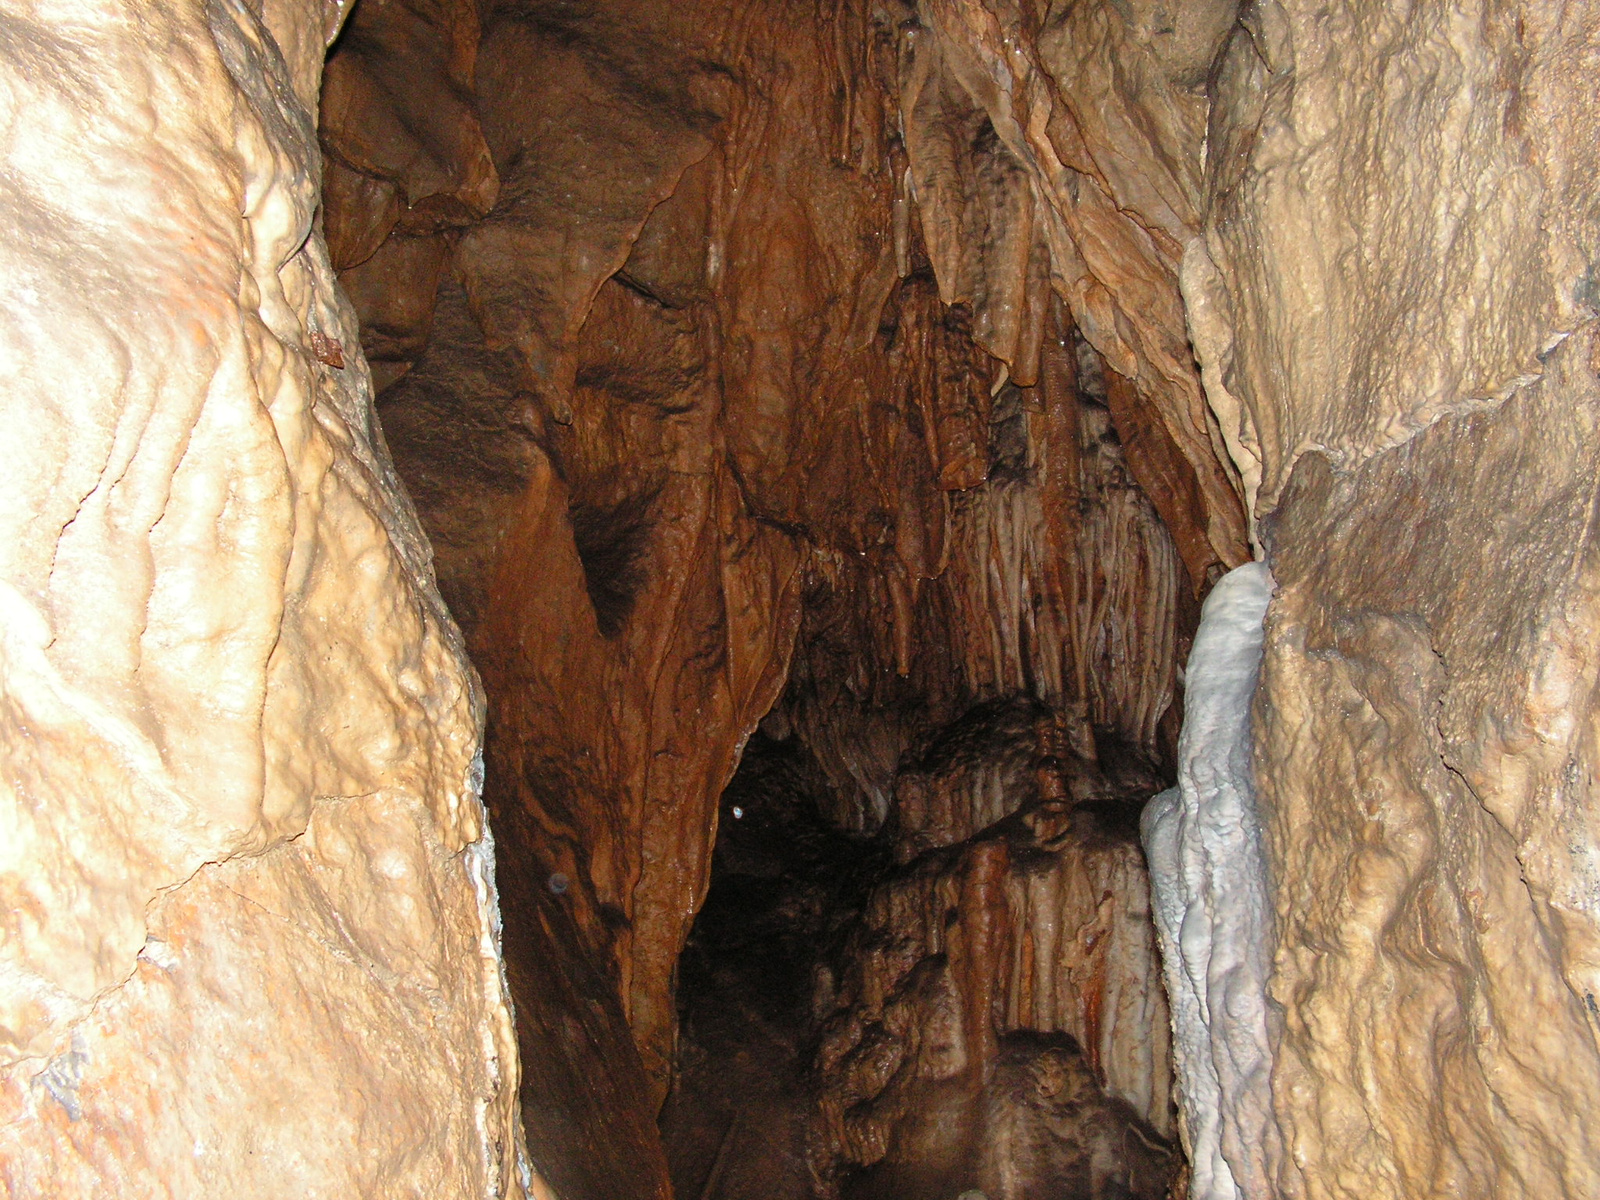 Csehország, Morva karszt, Balcarka barlang, SzG3